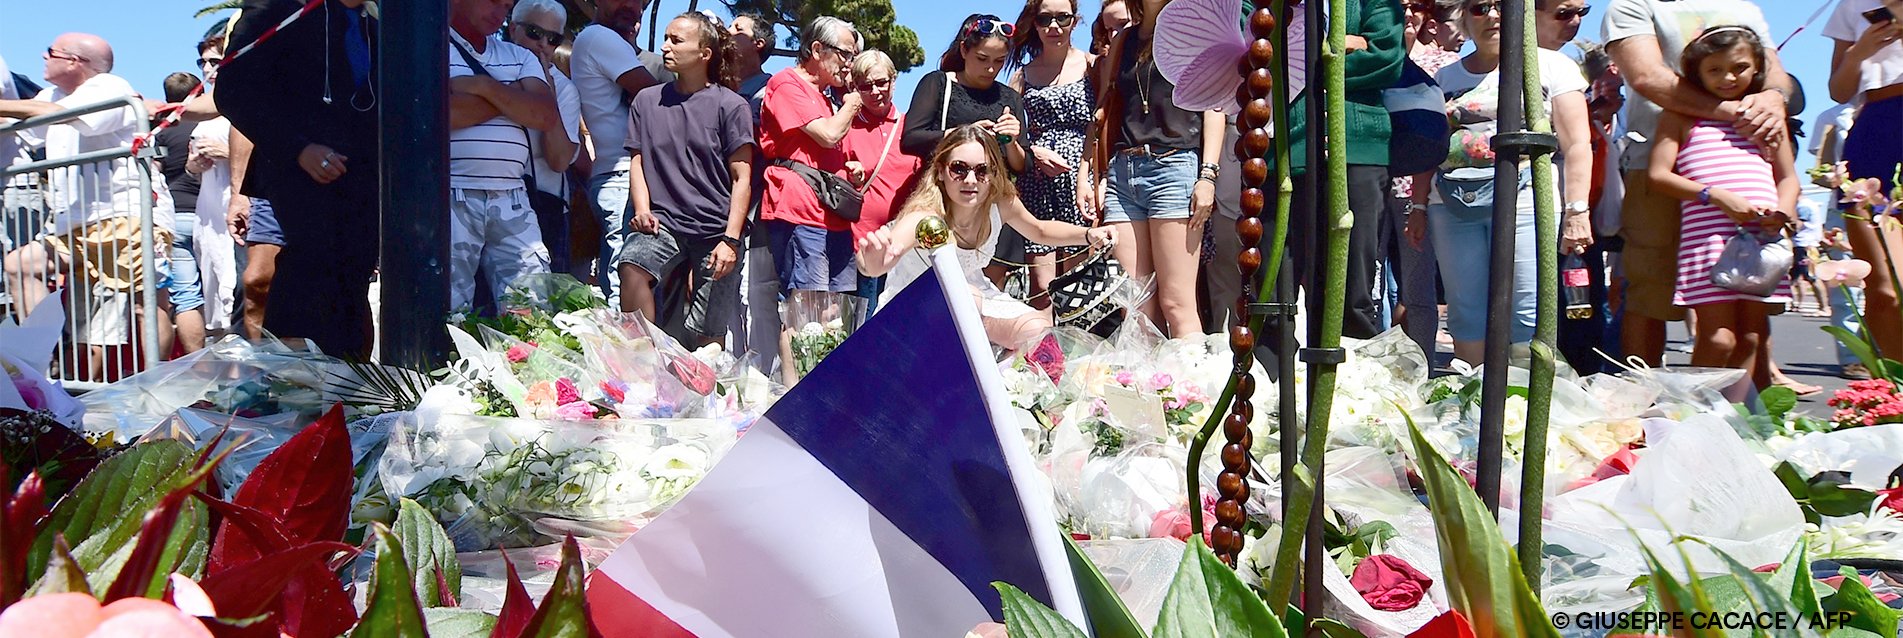 Attentat de Nice : trois ans après, des blessures encore ouvertes